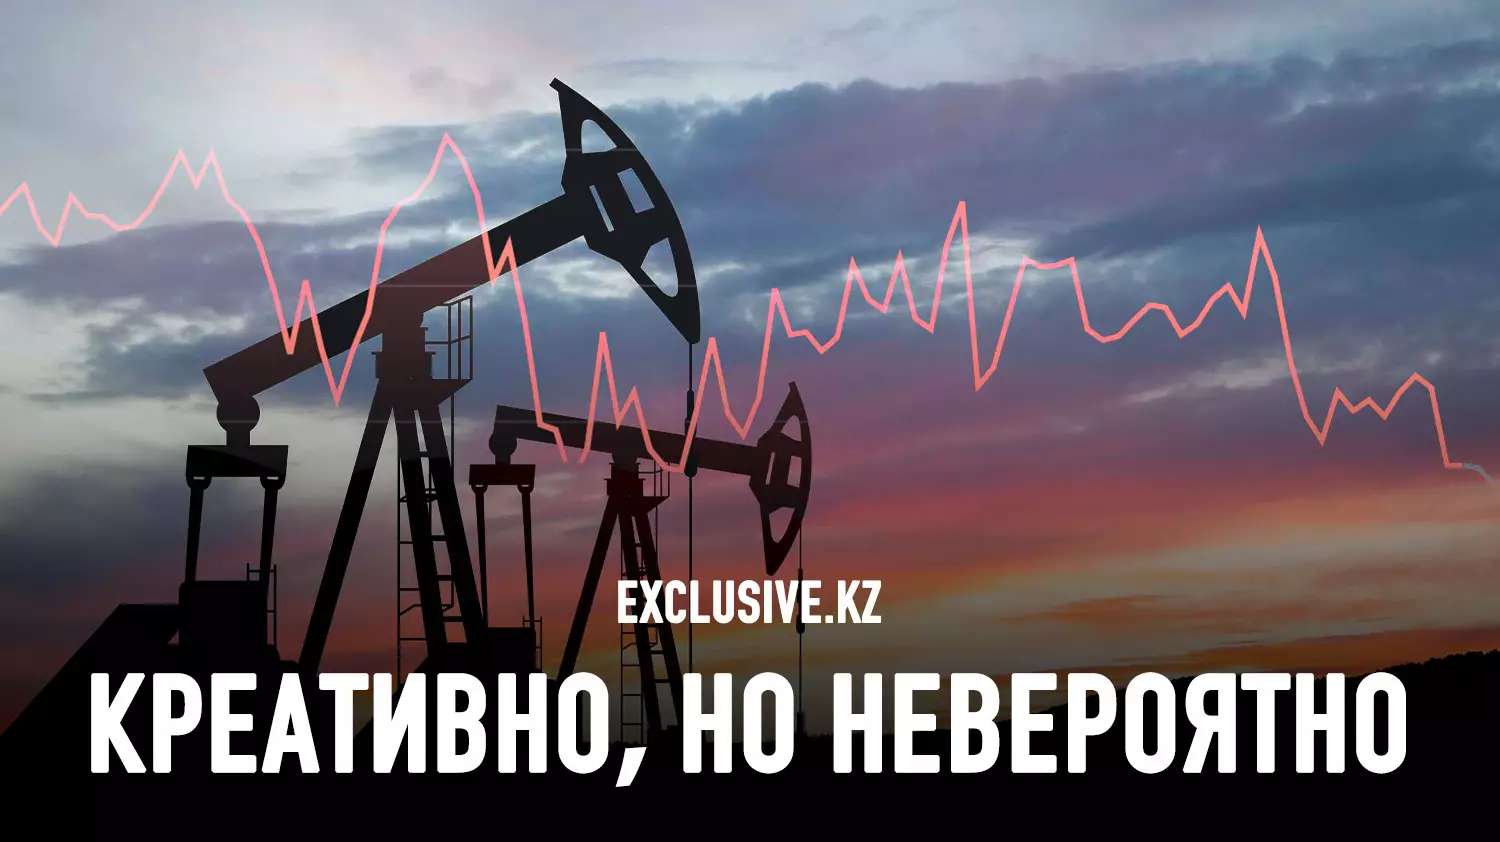 Что означает идея выкупа доли иностранных нефтяных компаний за счет замороженных российских ЗВР?